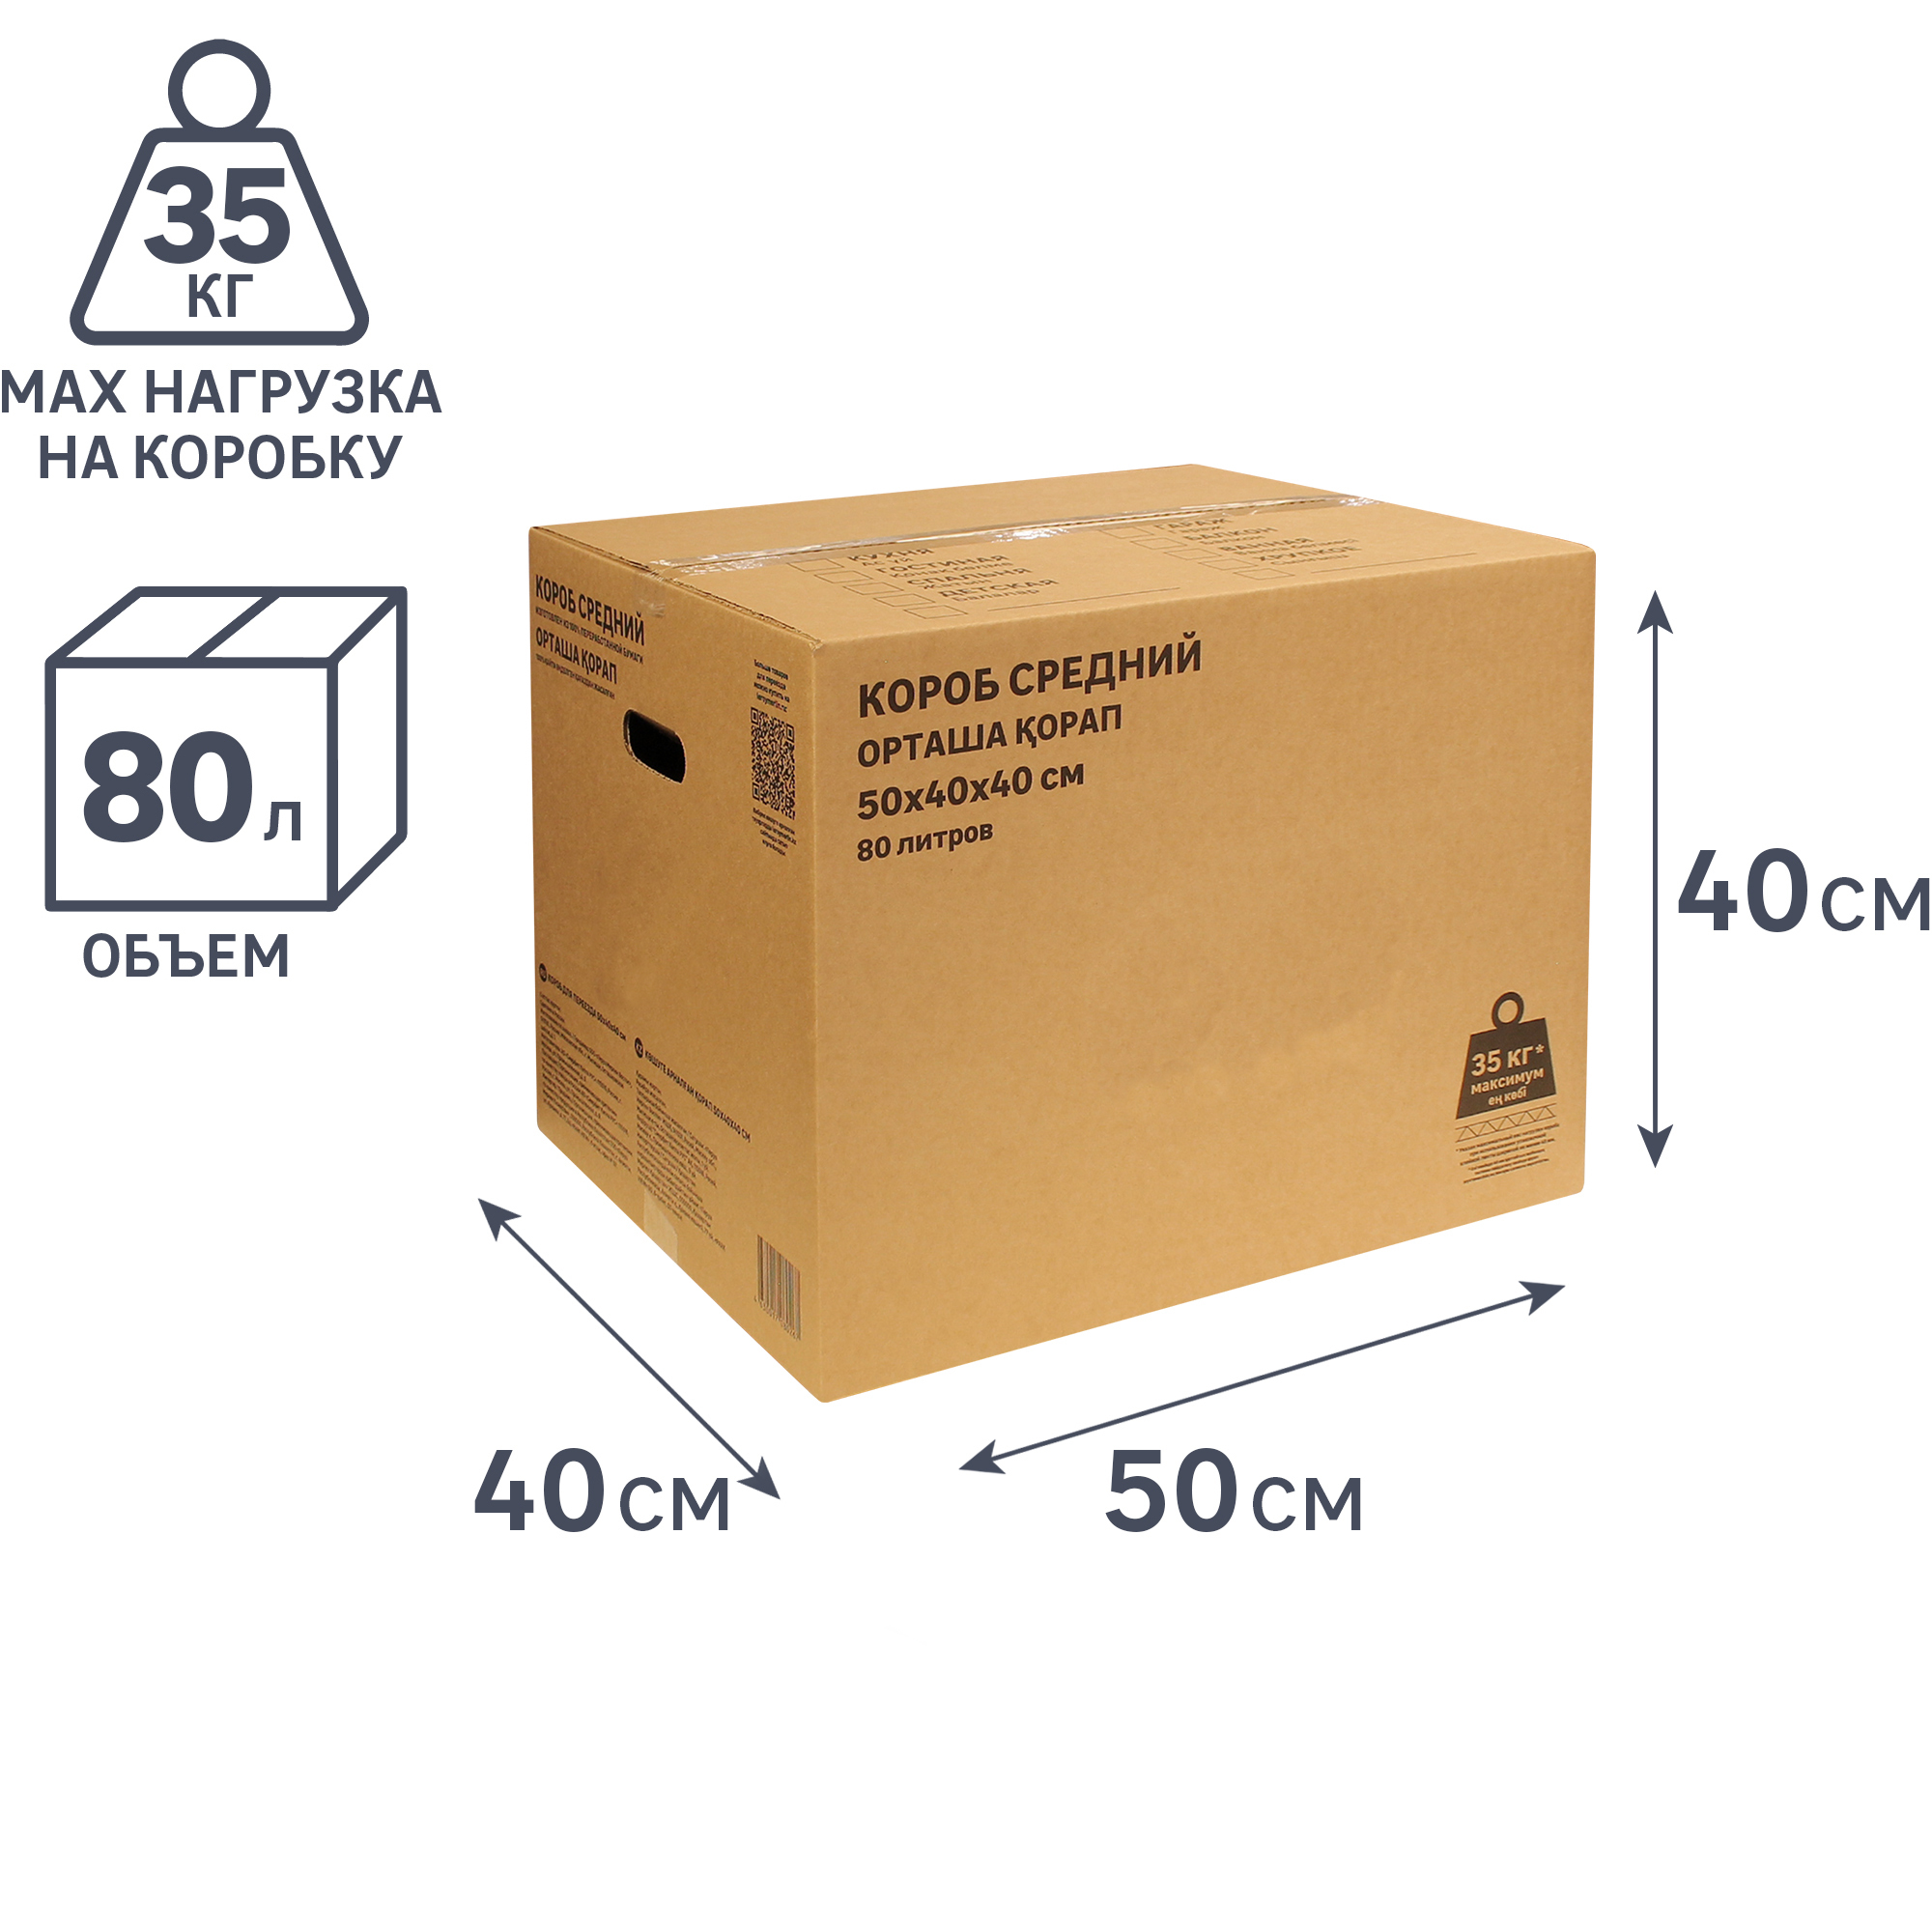 Как упаковать коробку в подарочную бумагу: 5 простых способов